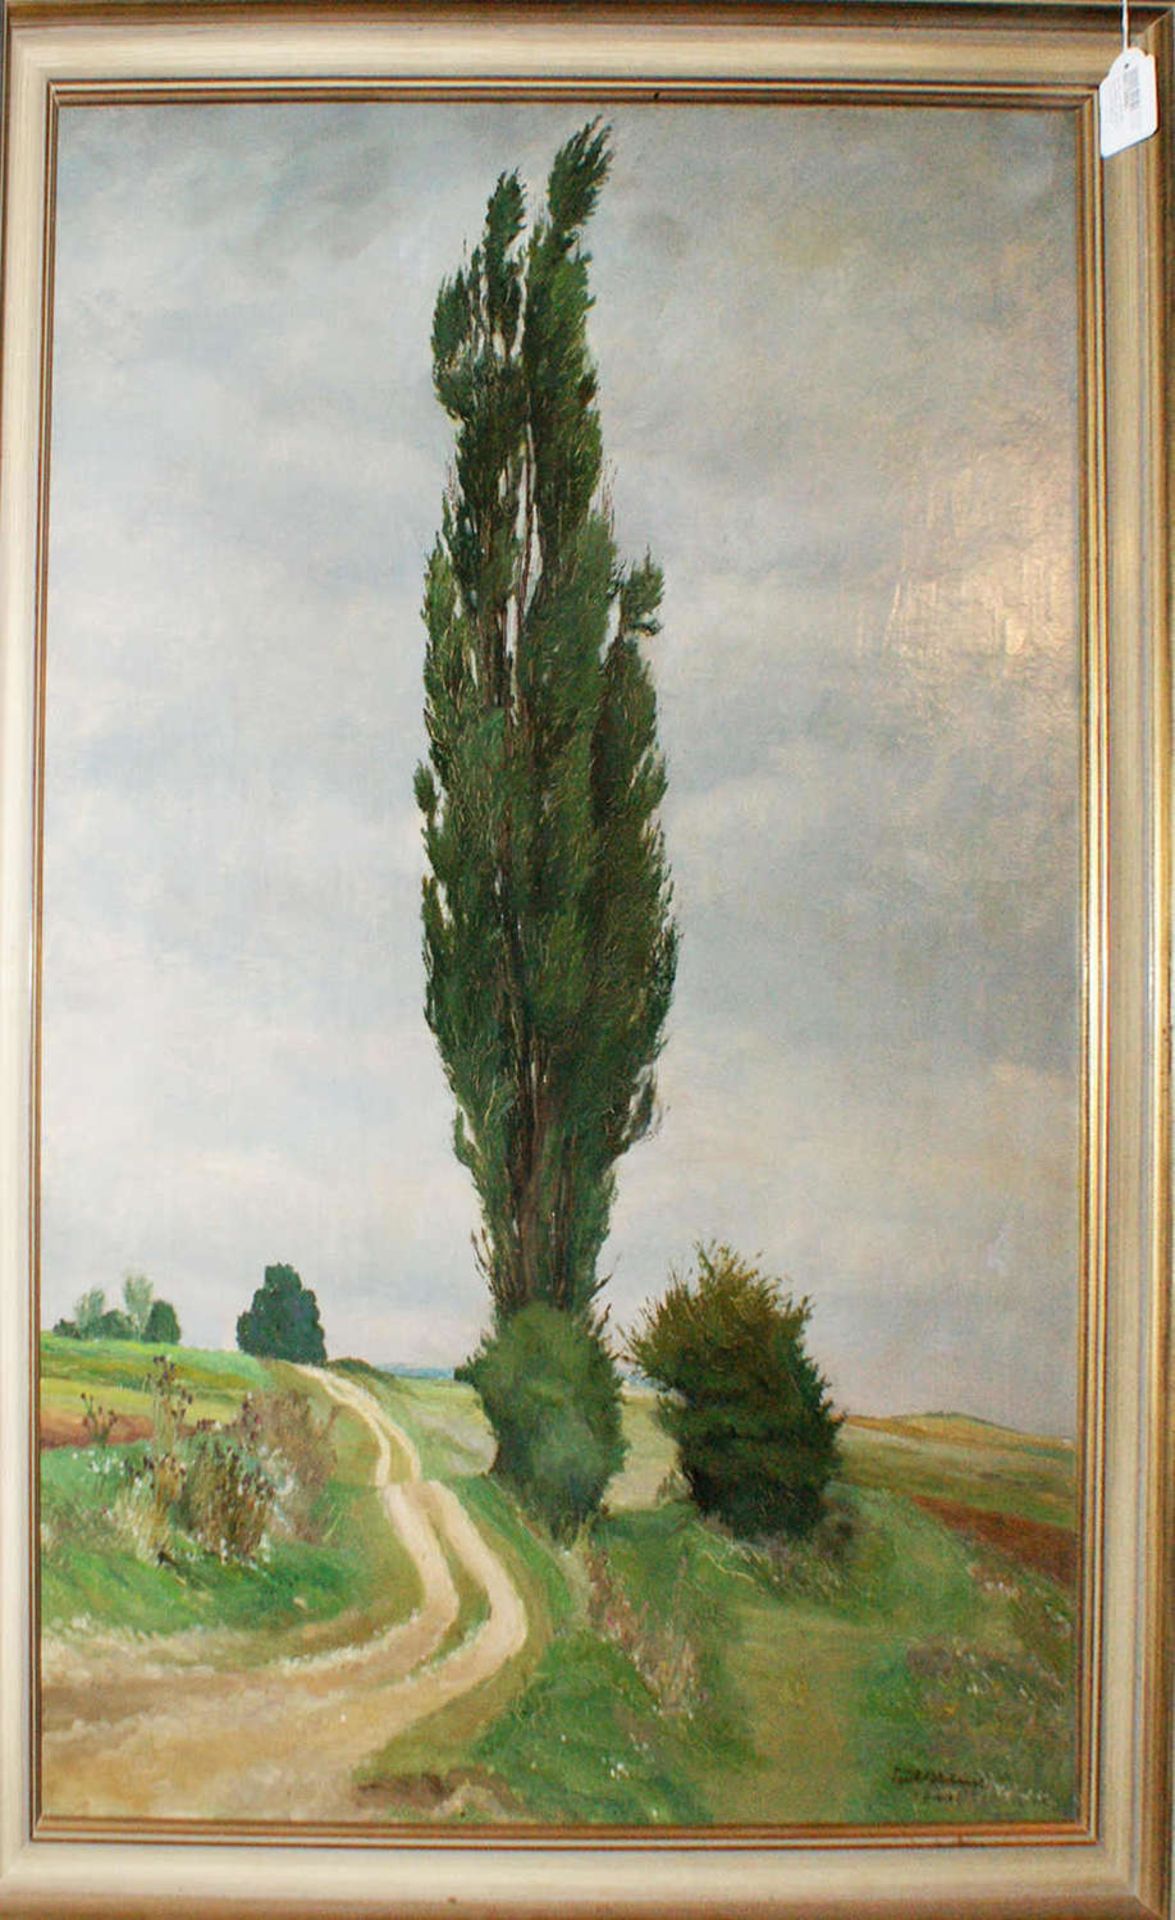 Paul Blume (1900-1981), Ölgemälde auf Leinwand, "Imposanter Baum am Wegesrand", rechts unten